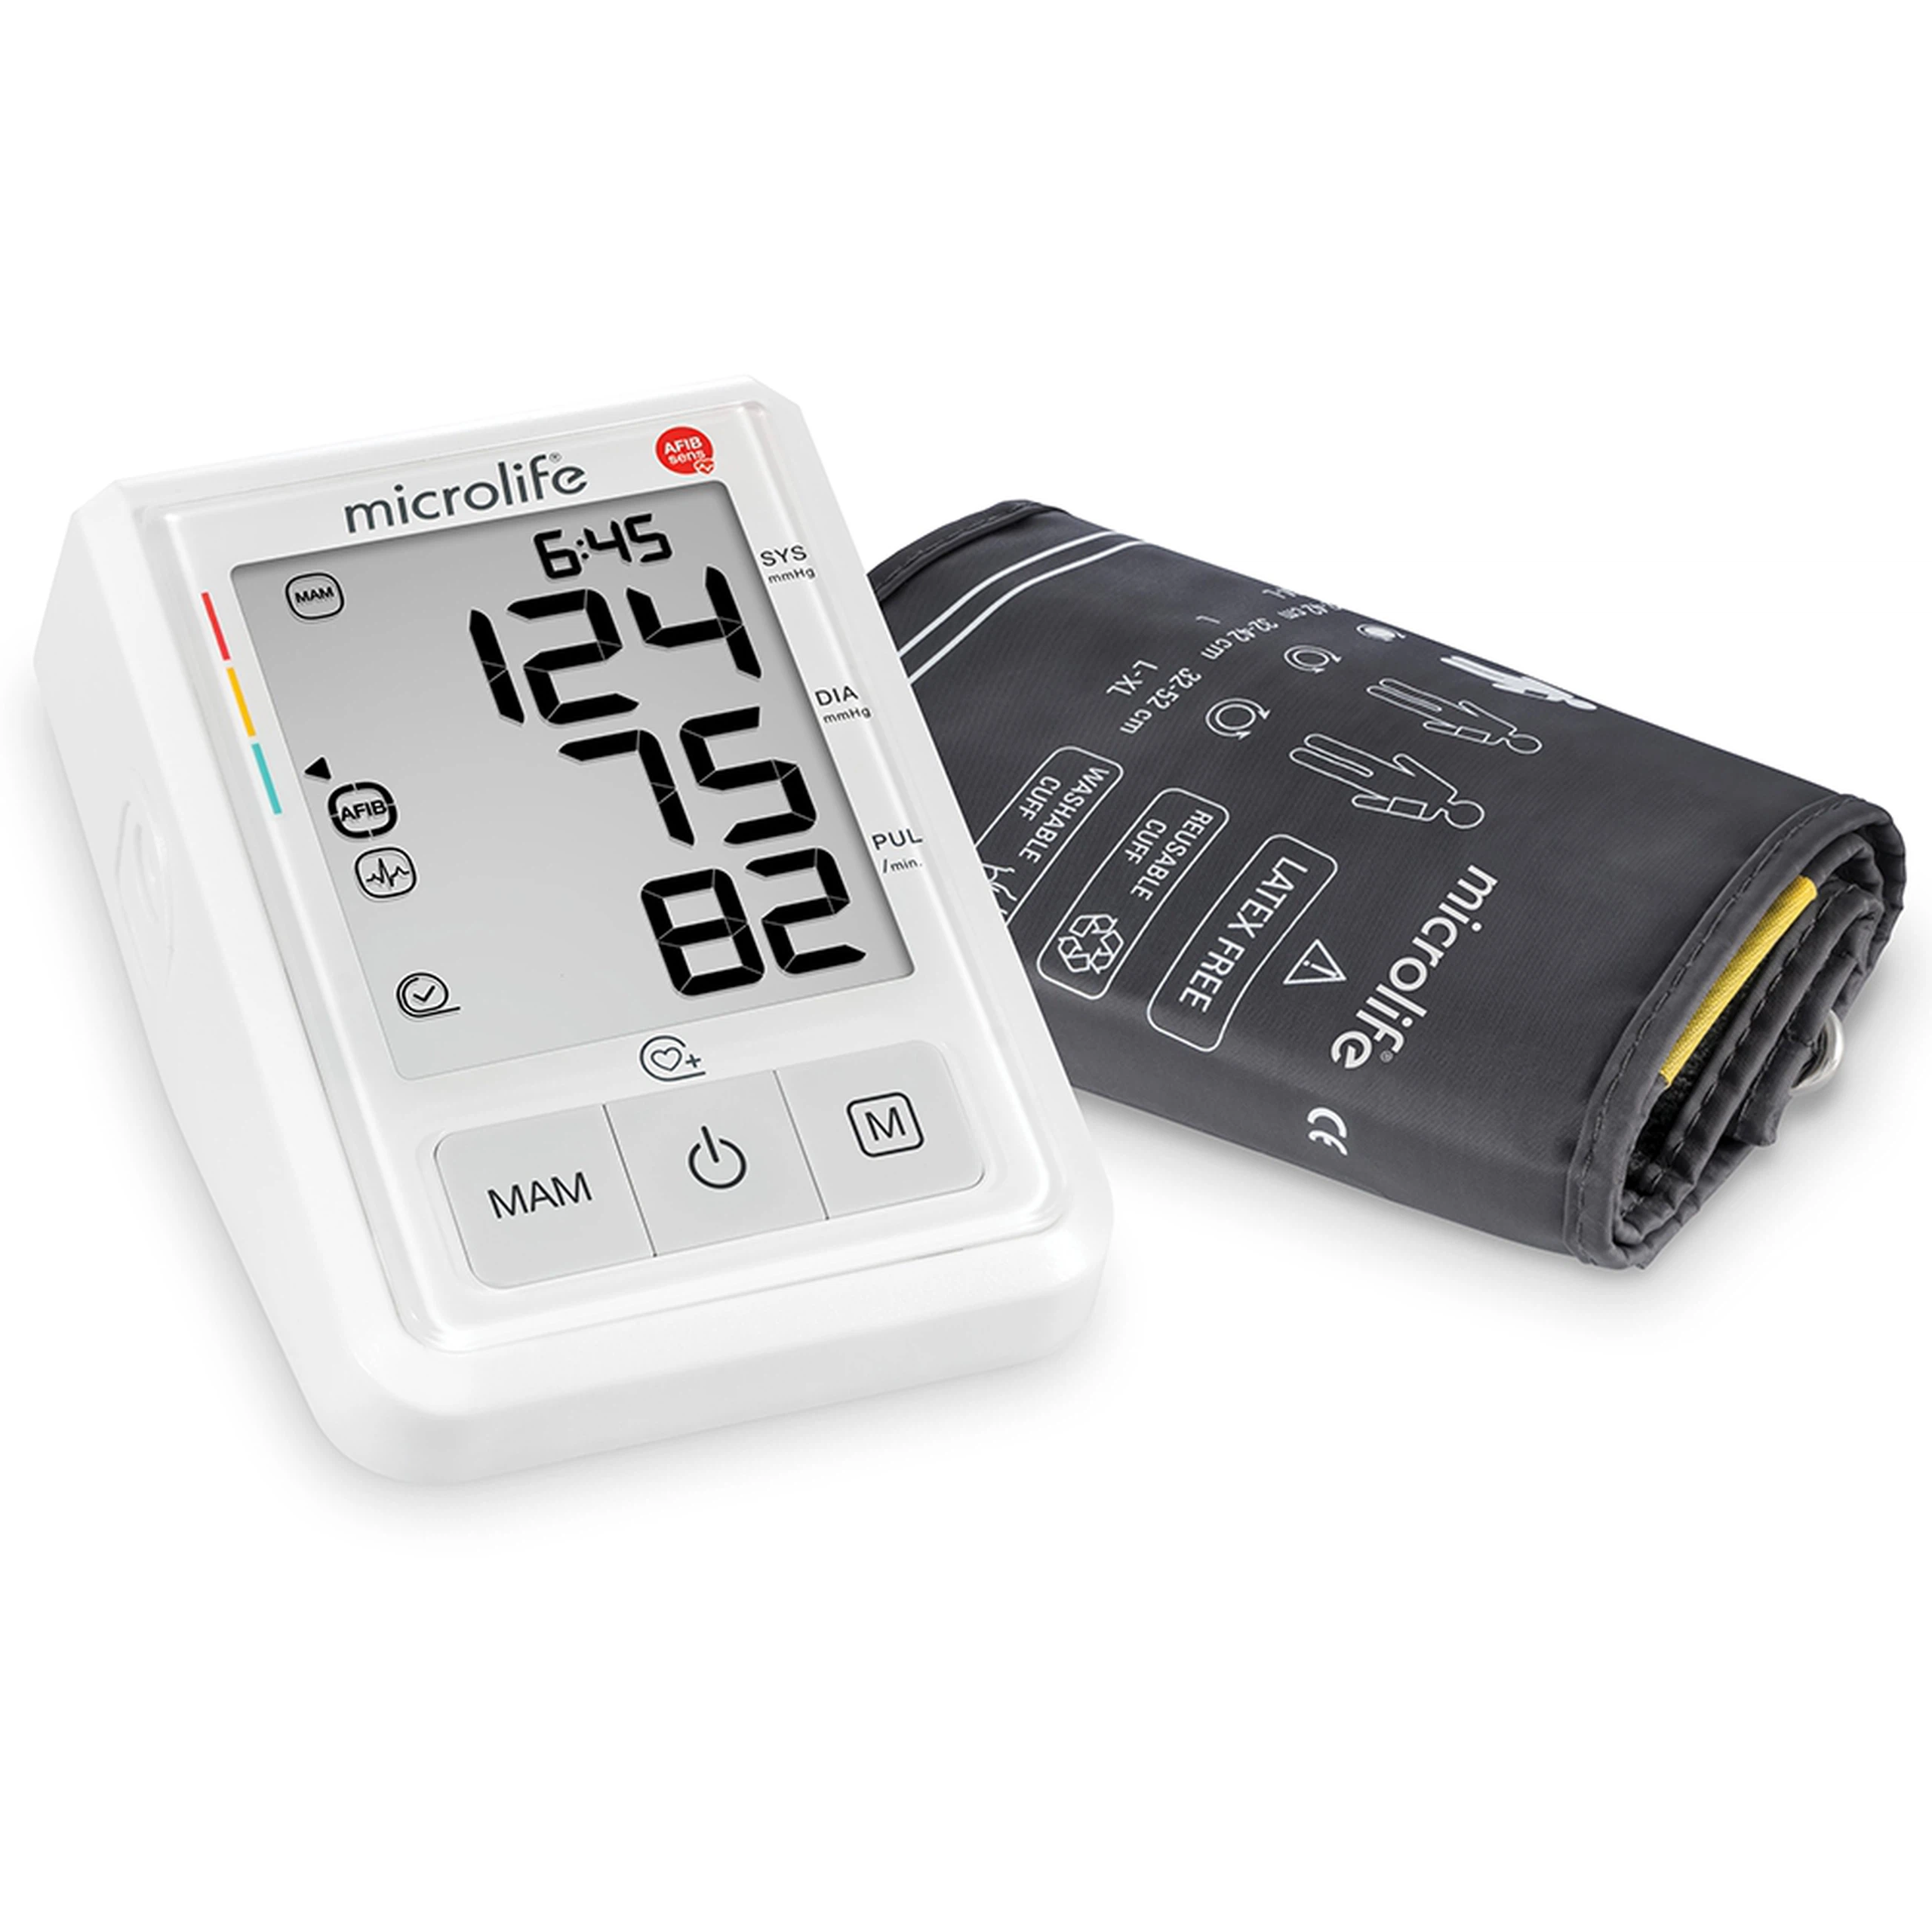 Máy đo huyết áp bắp tay Microlife B3 AFIB Advanced hỗ trợ đo huyết áp, cảnh báo đột quỵ